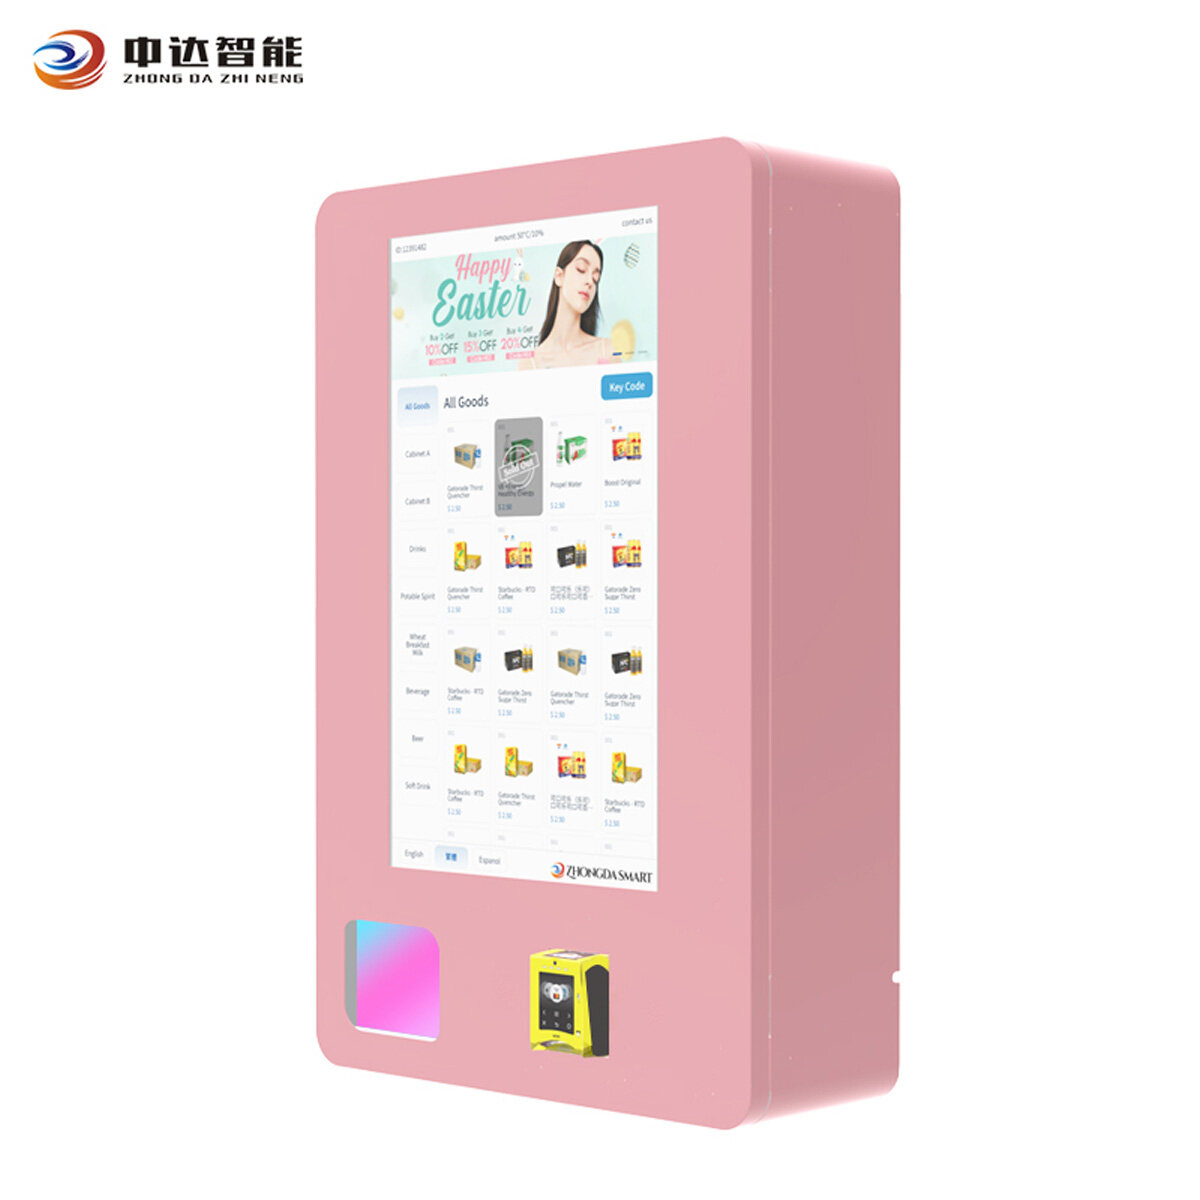 Custom beauty supply vending machine,China beauty vending machine,wall mounted mini vending machine Manufacturer,small wall mounted vending machines Factory